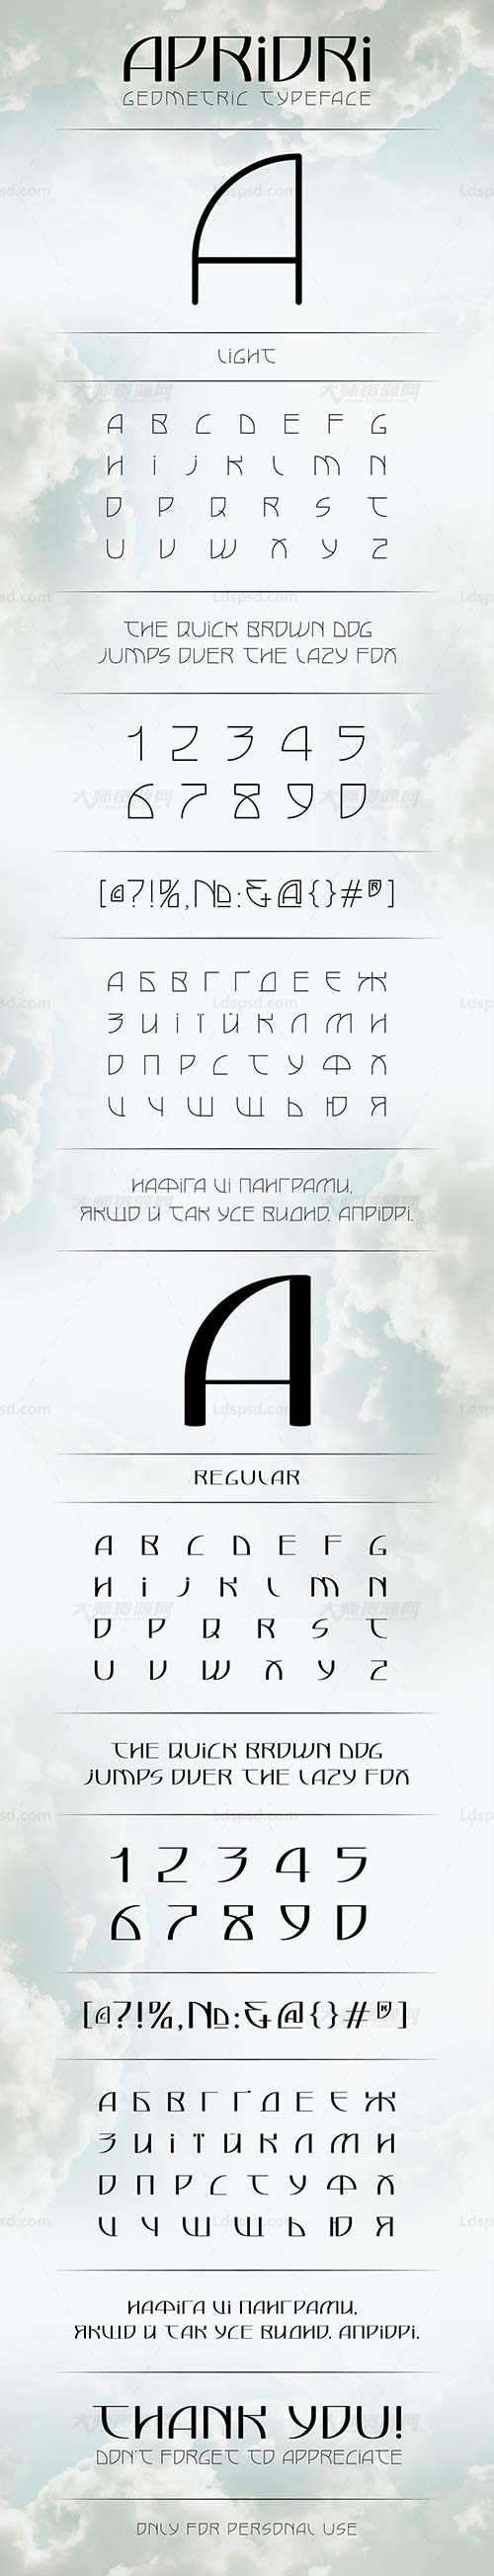 Apriori Font,秀气的英文字体